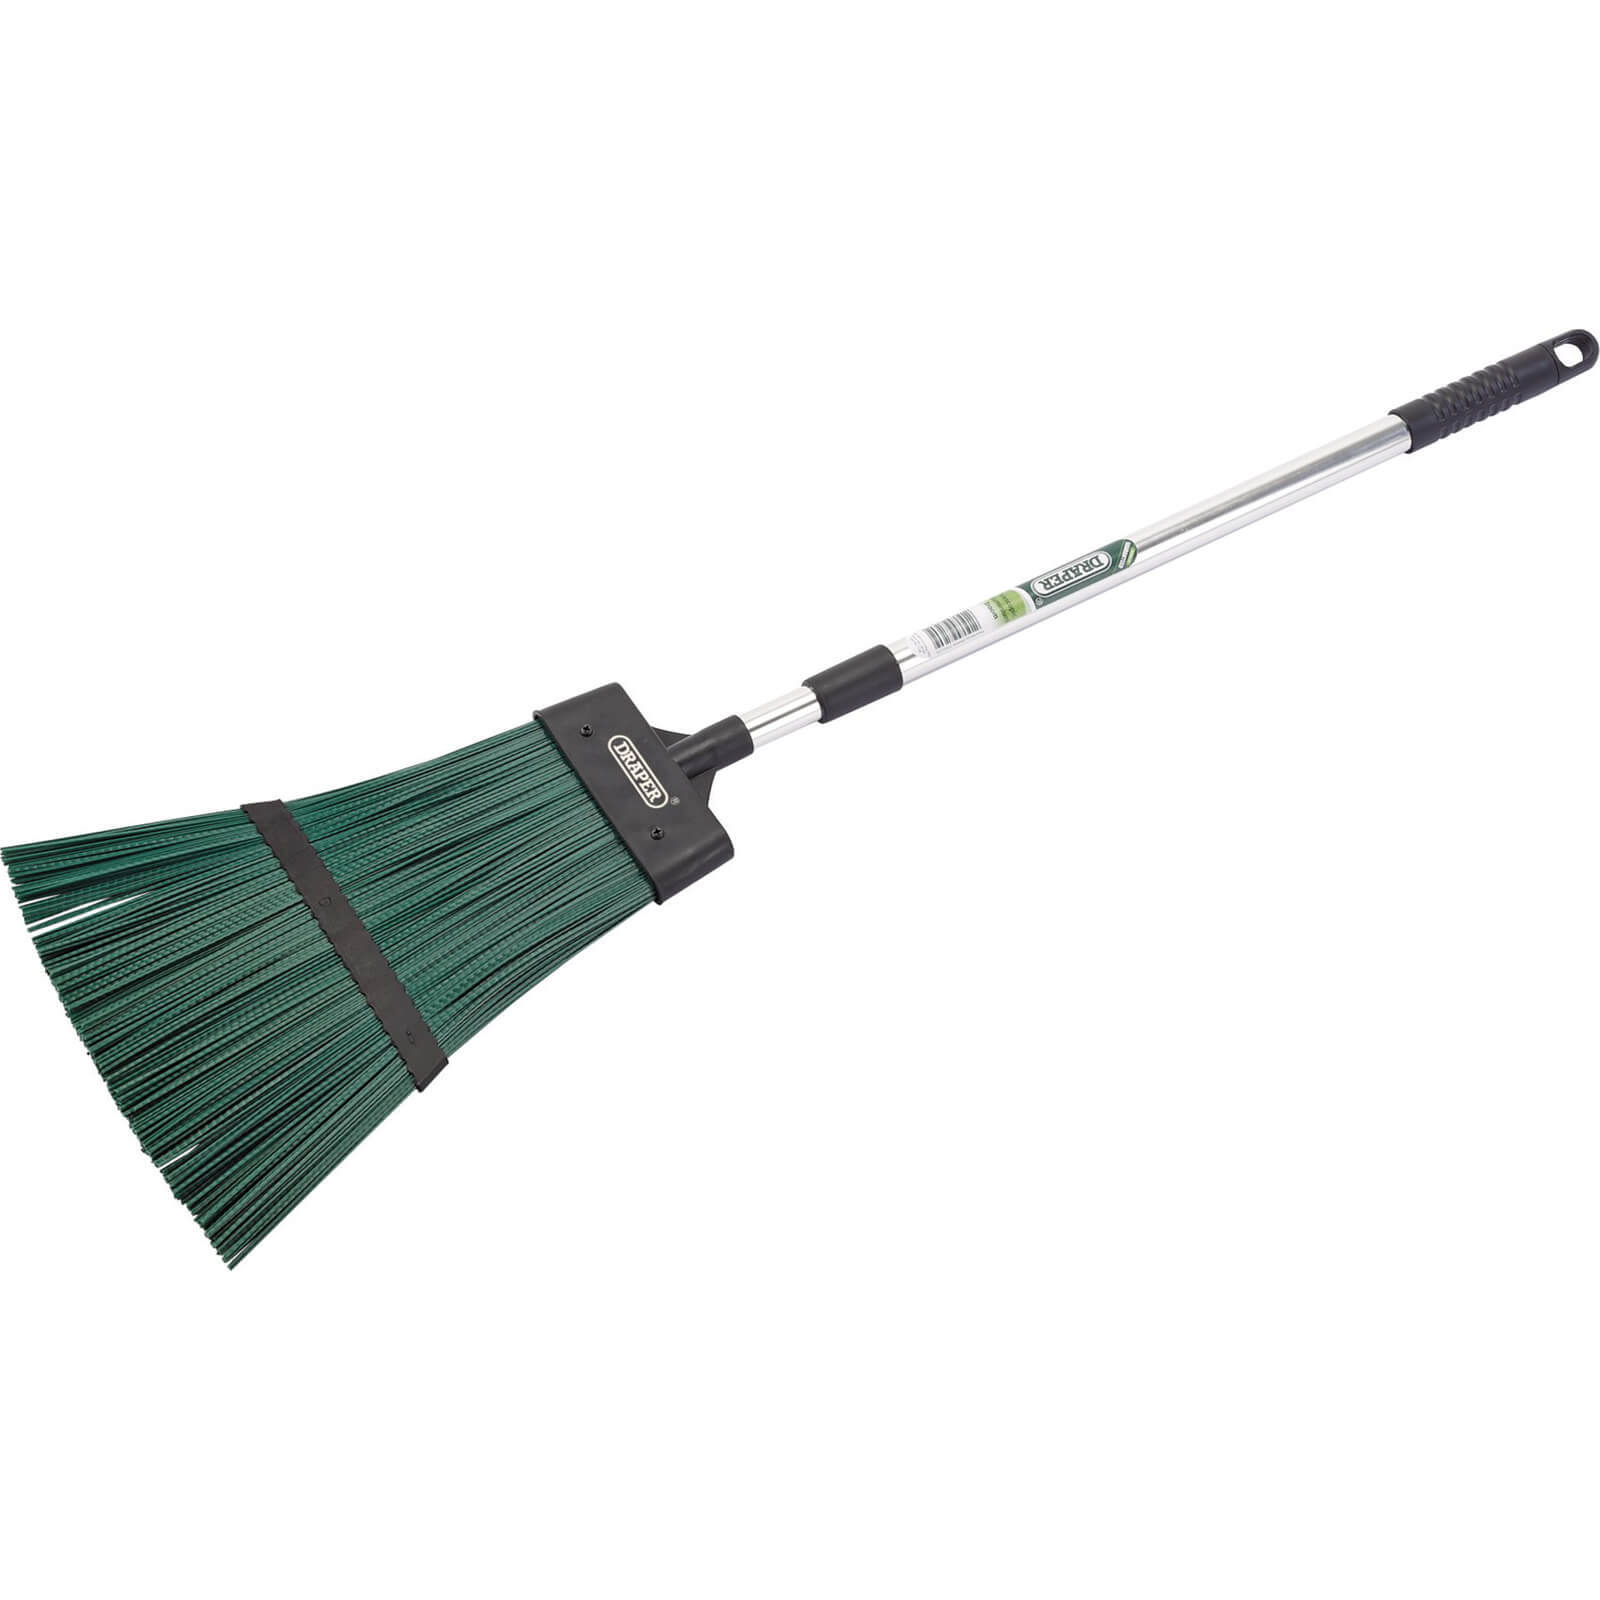 Draper Telescopic Handle Aluminium Garden Broom 0.65m - 1m